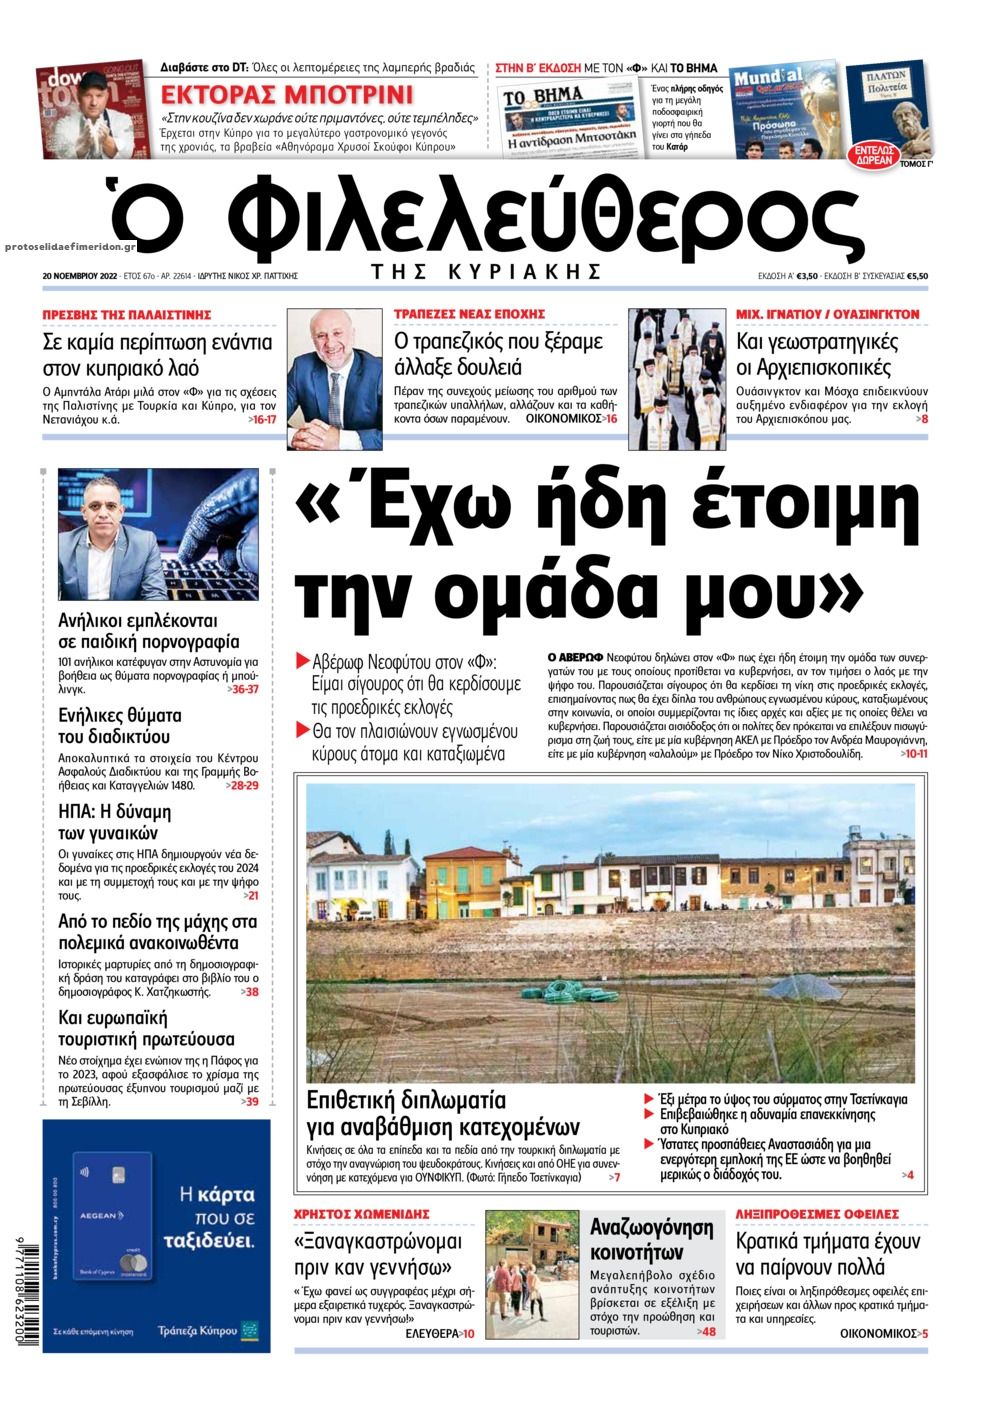 Πρωτοσέλιδο εφημερίδας Ο Φιλελεύθερος Κύπρου